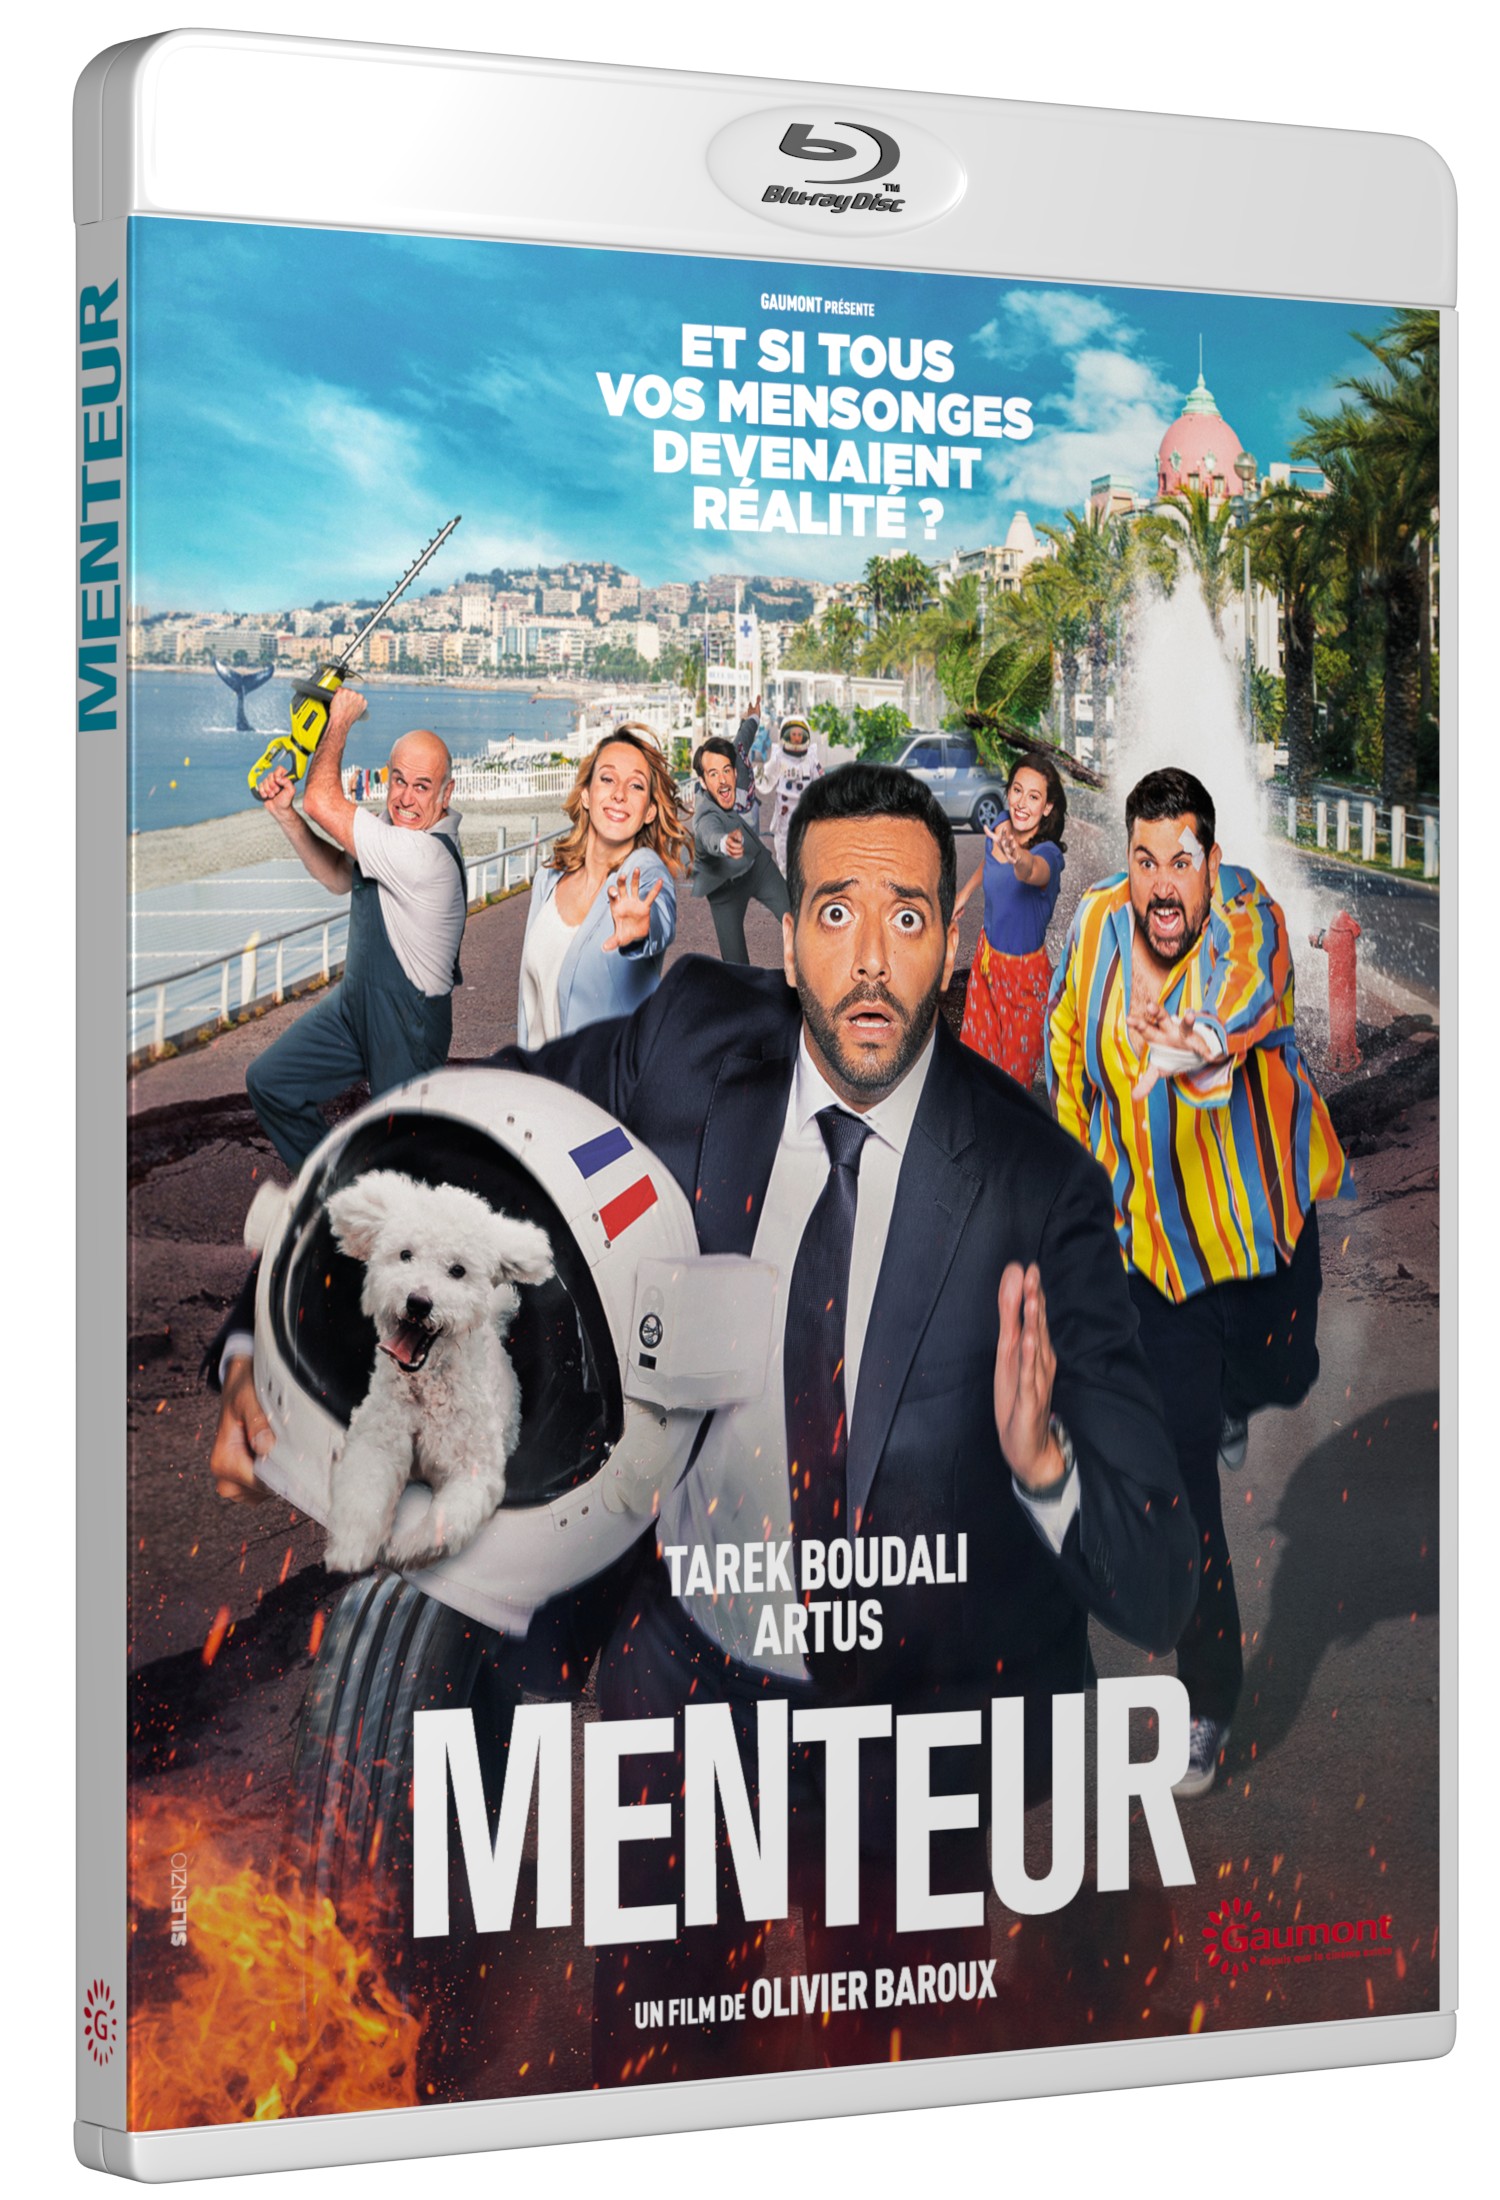 MENTEUR - DVD